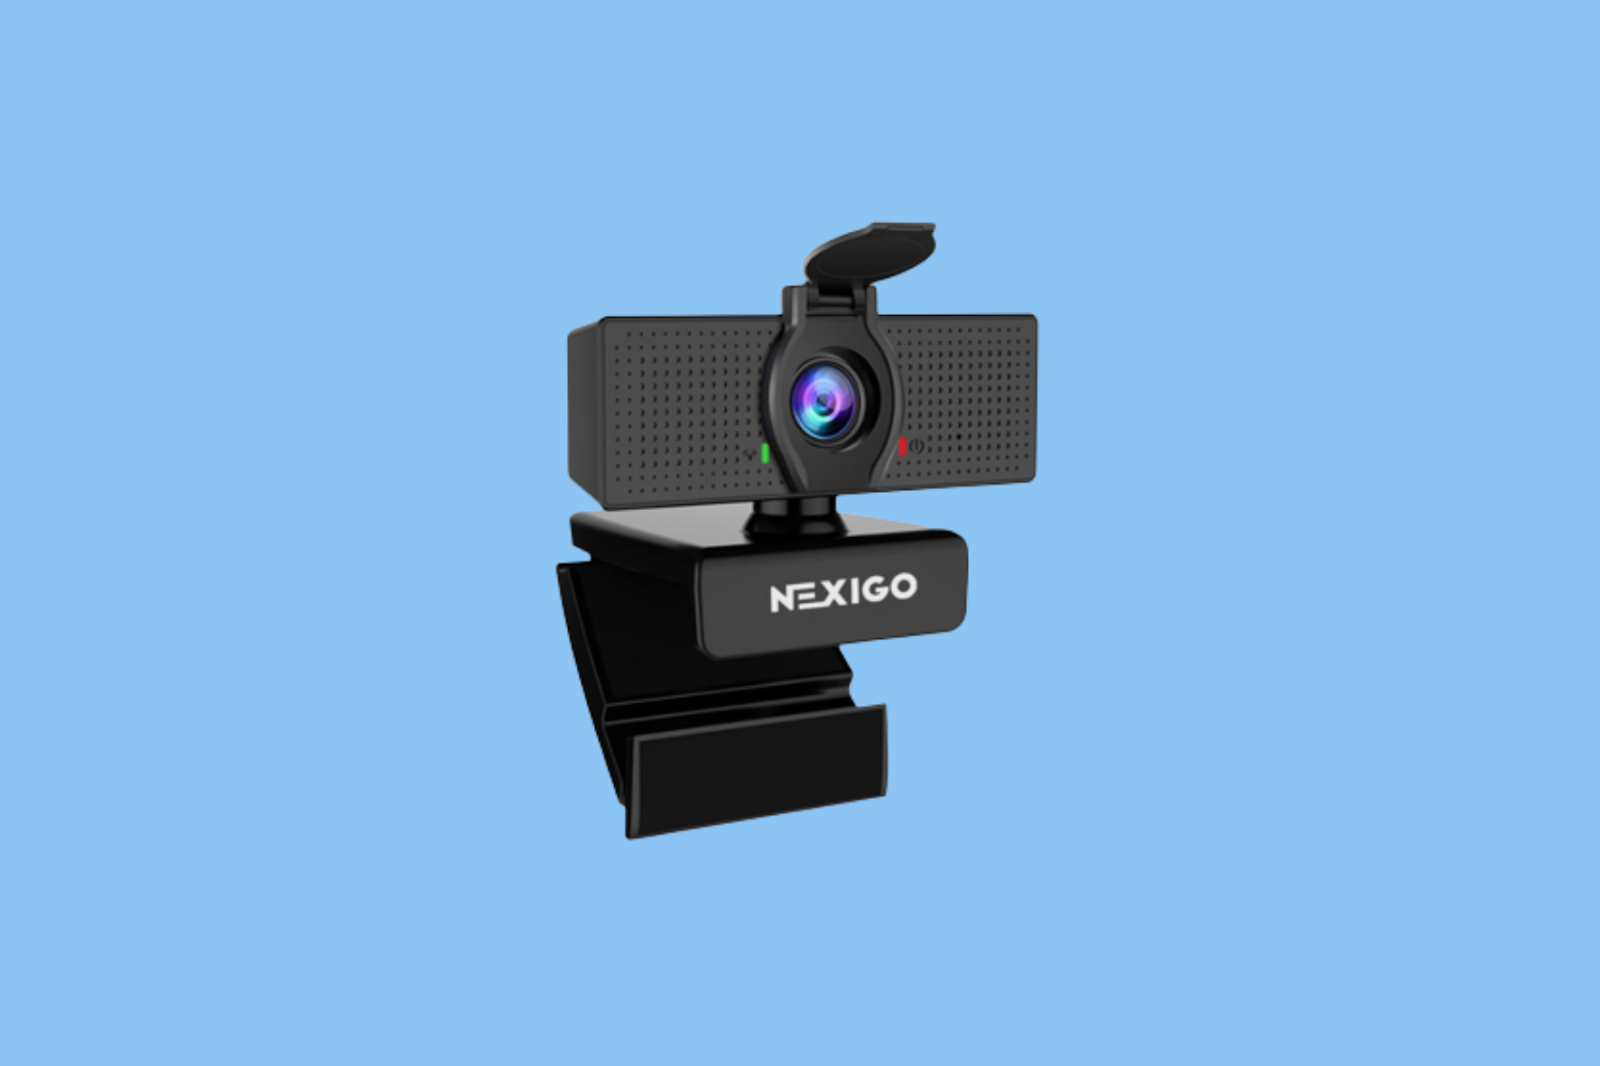 nexigo webcam for your gamer friends